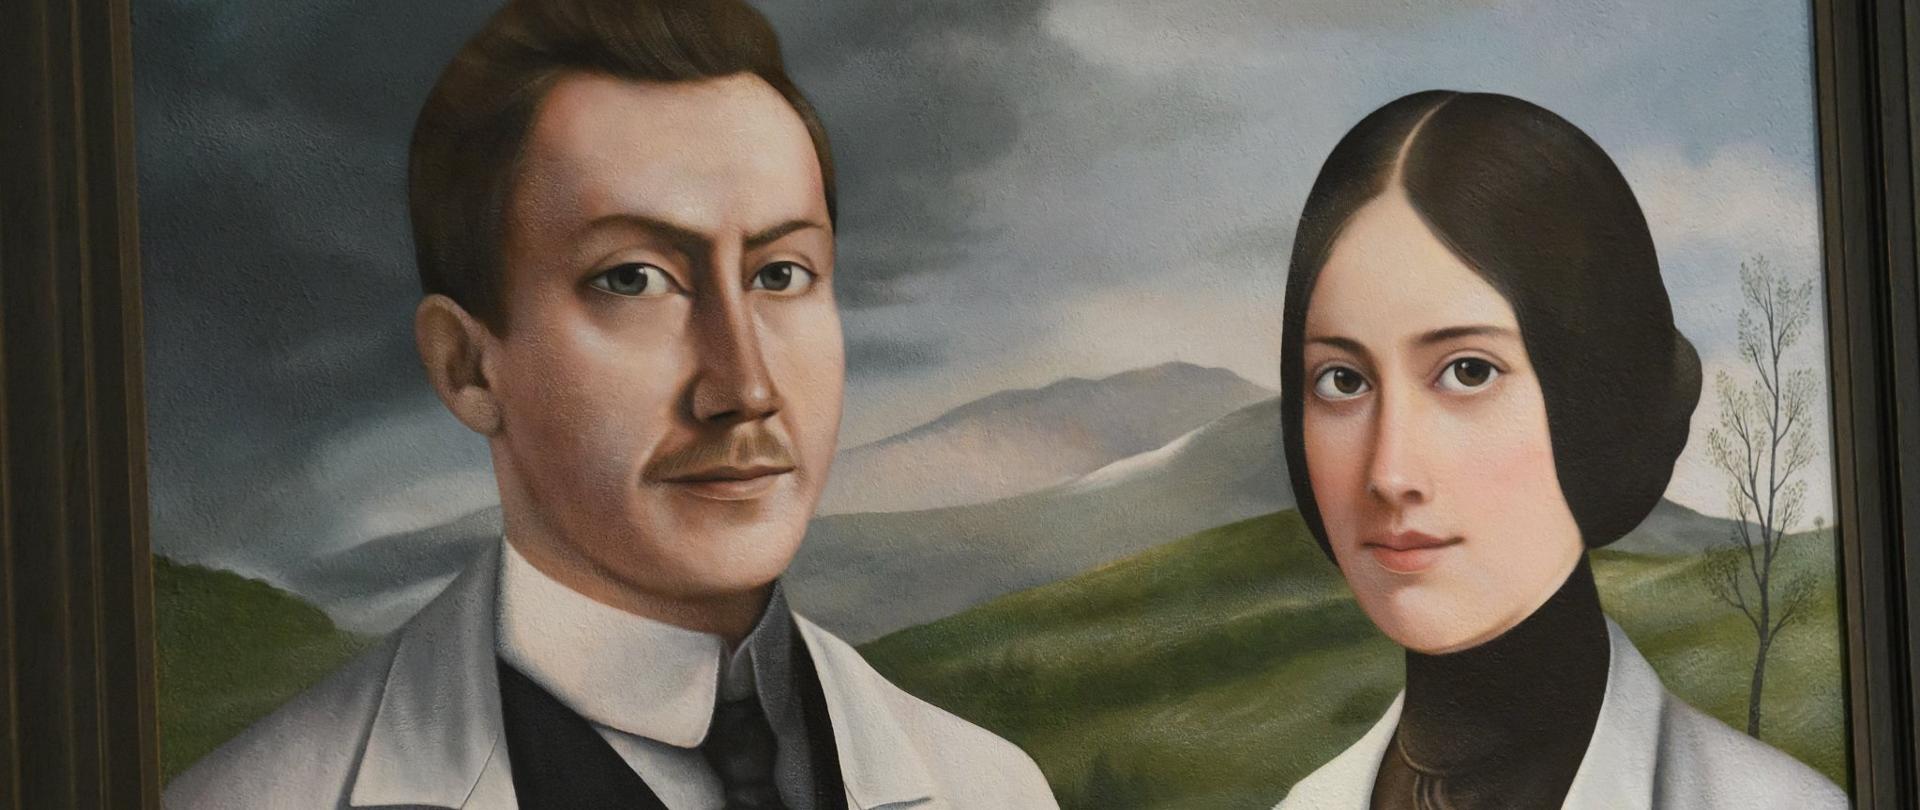 W klubie państwowego serbskiego radia i telewizji (RTS) odbyła się uroczysta prezentacja portretu małżeństwa lekarzy Hanny i Ludwika Hirszfeldów 